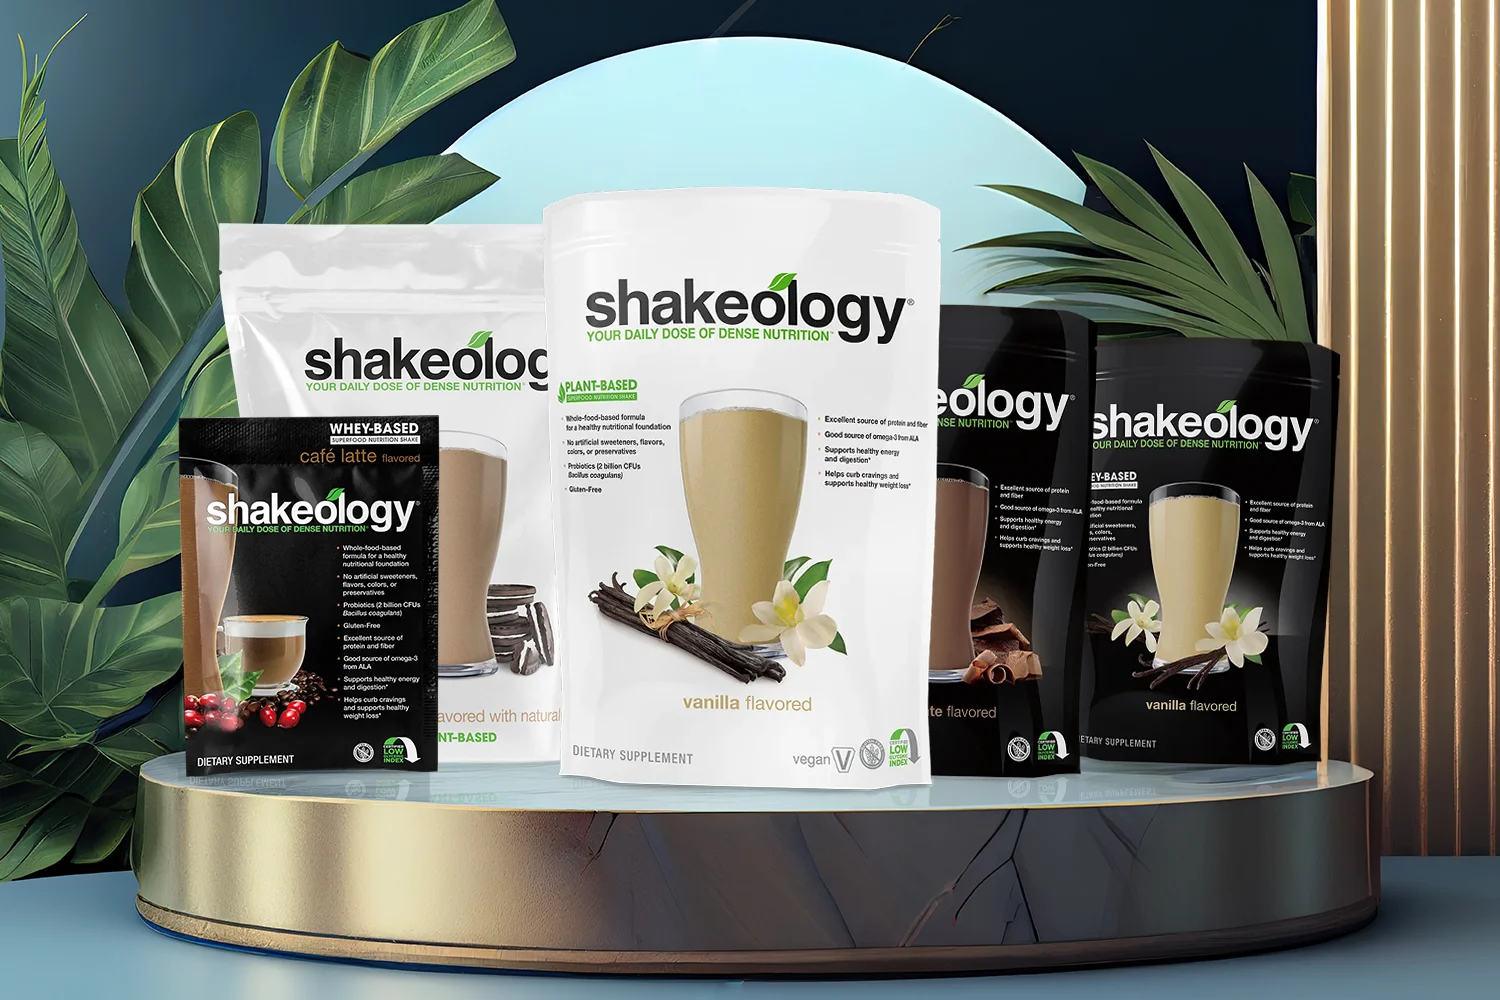 Shakeology Shakes packets on leafy background